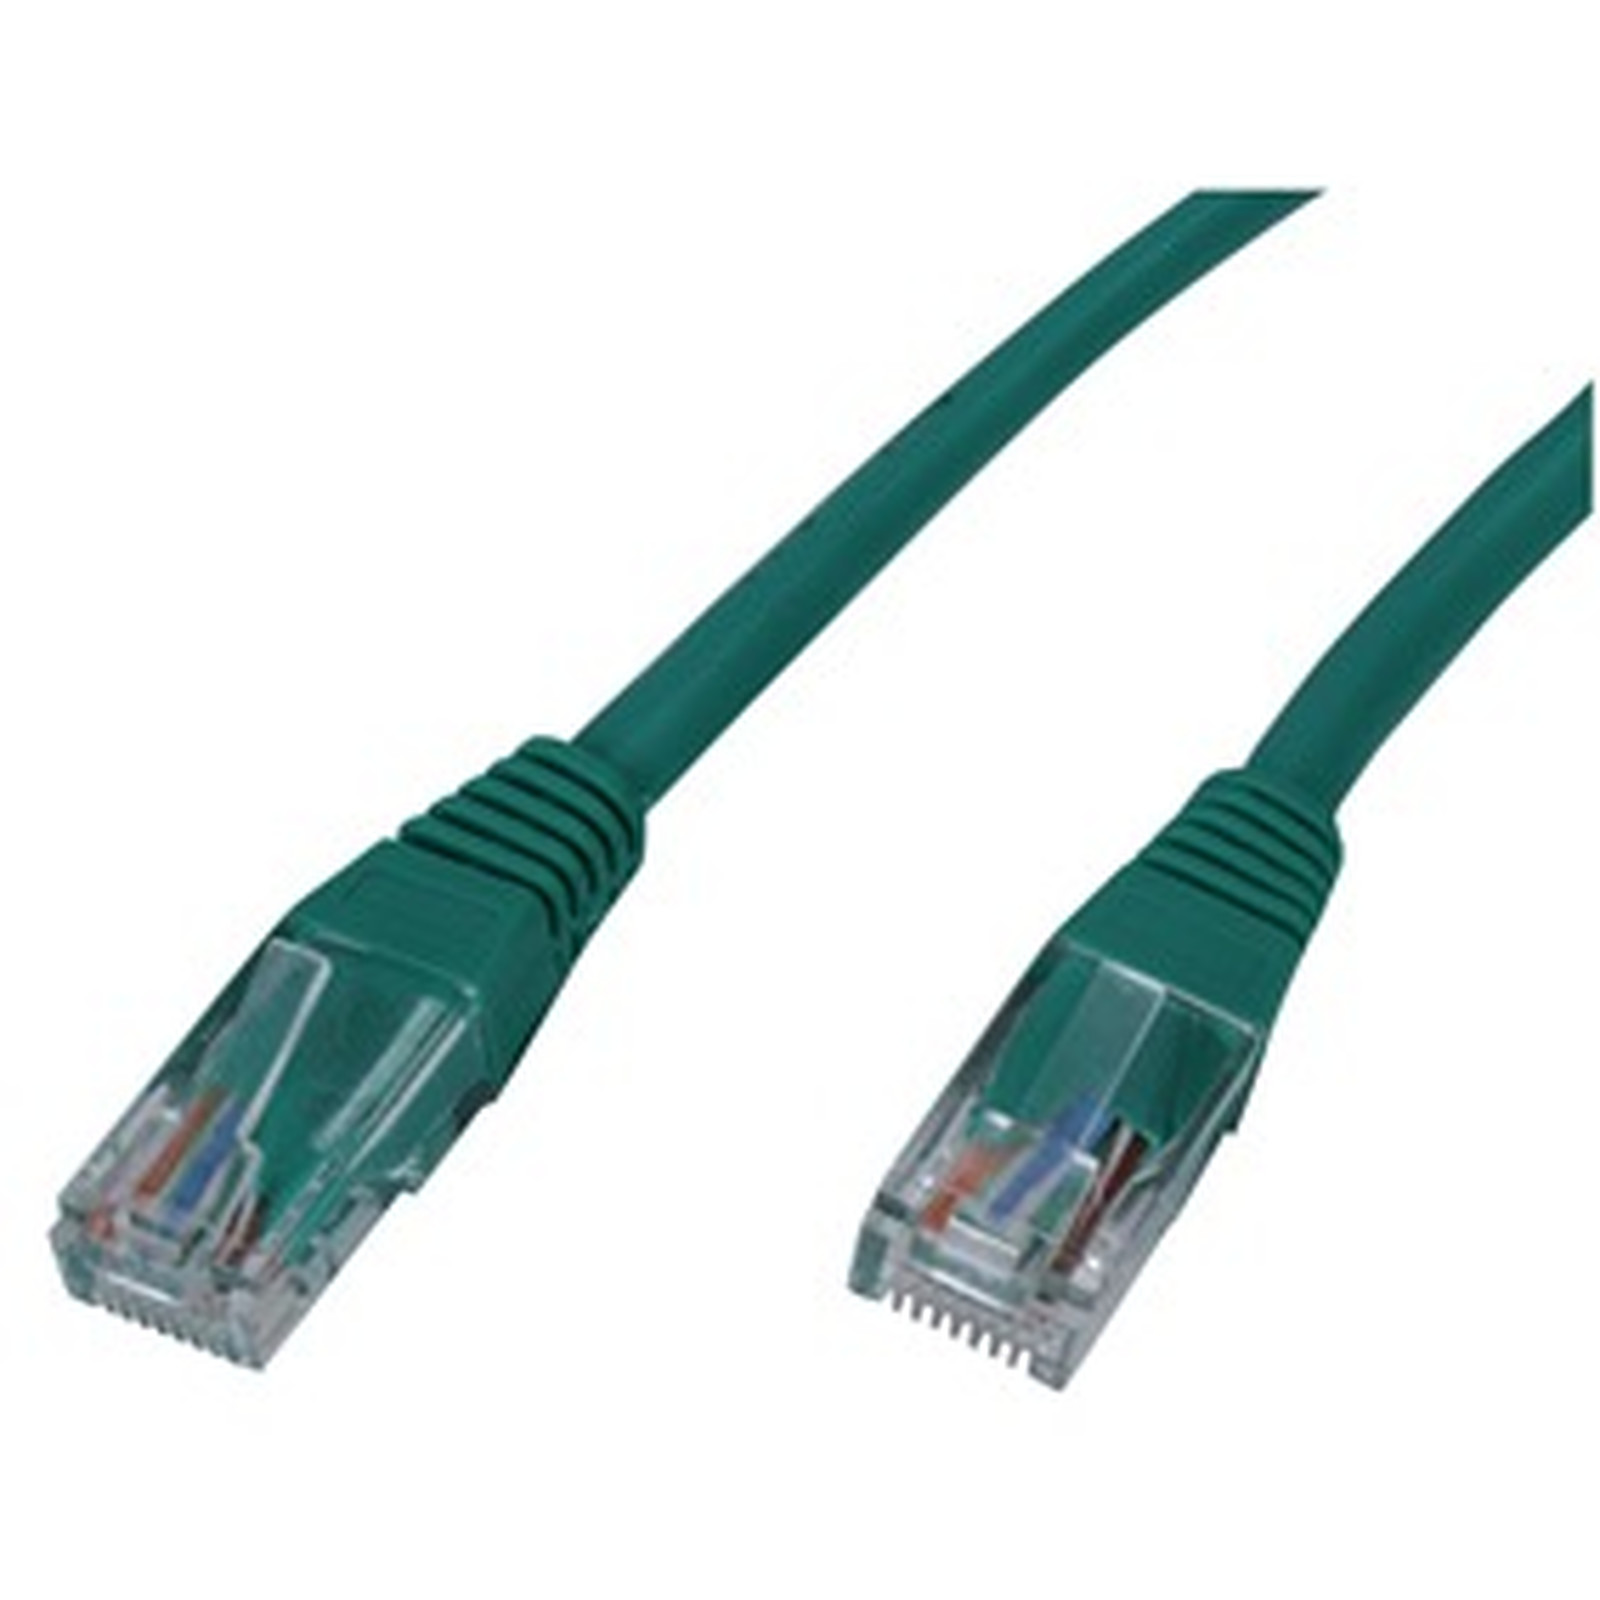 Cable RJ45 categorie 5e U/UTP 1 m (Vert) - Cable RJ45 Generique